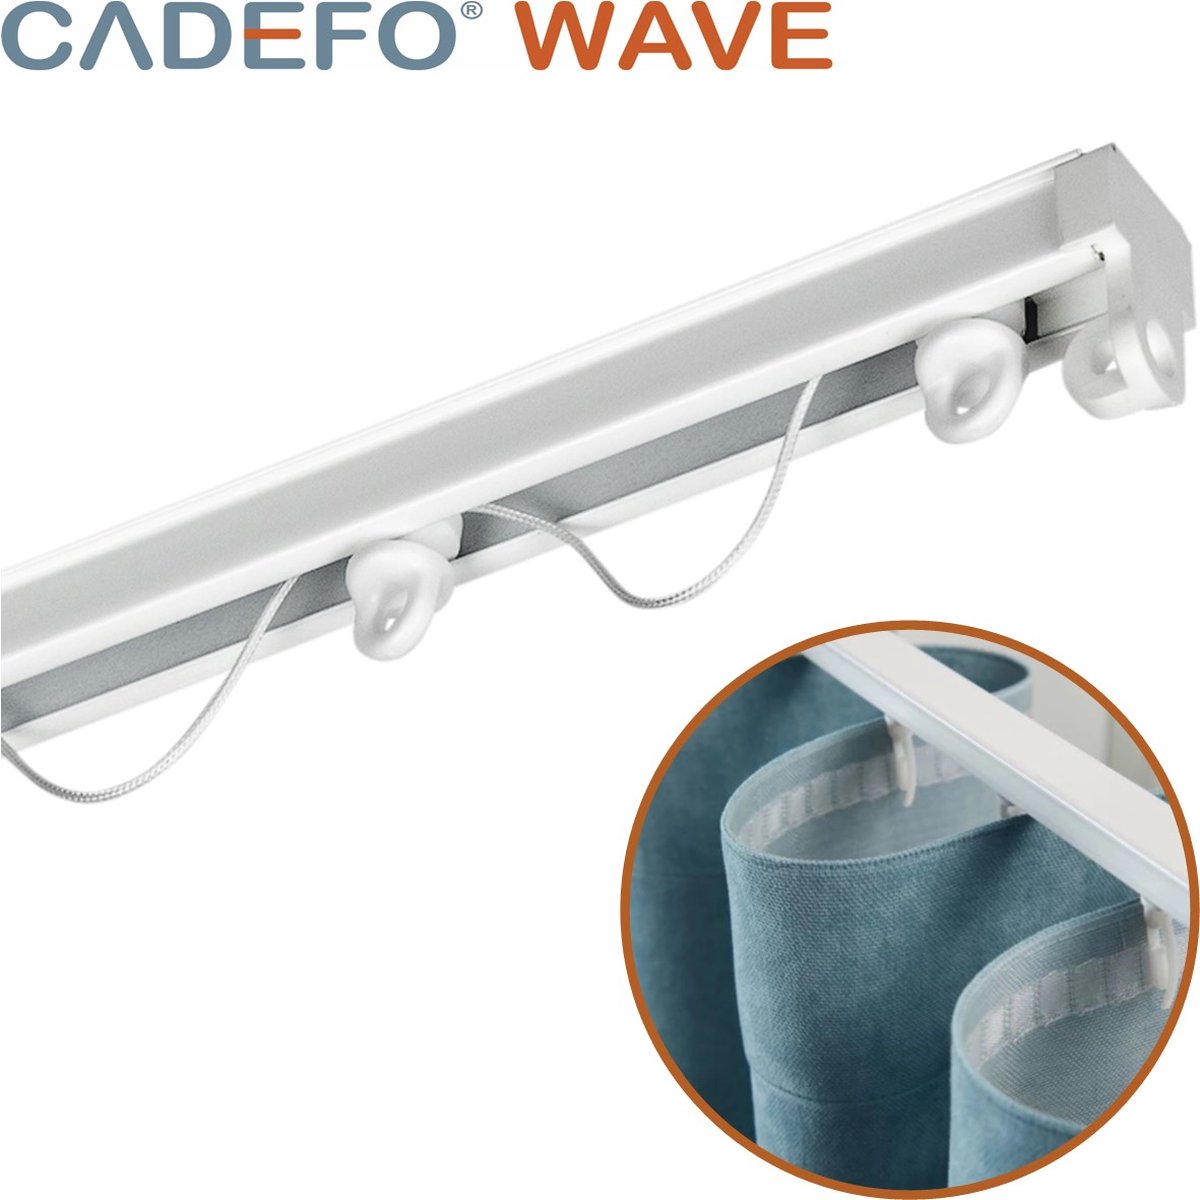 CADEFO WAVE (451 - 500 cm) Gordijnrails - Compleet op maat! - UIT 1 STUK - Leverbaar tot 6 meter - Plafondbevestiging - Lengte 486 cm